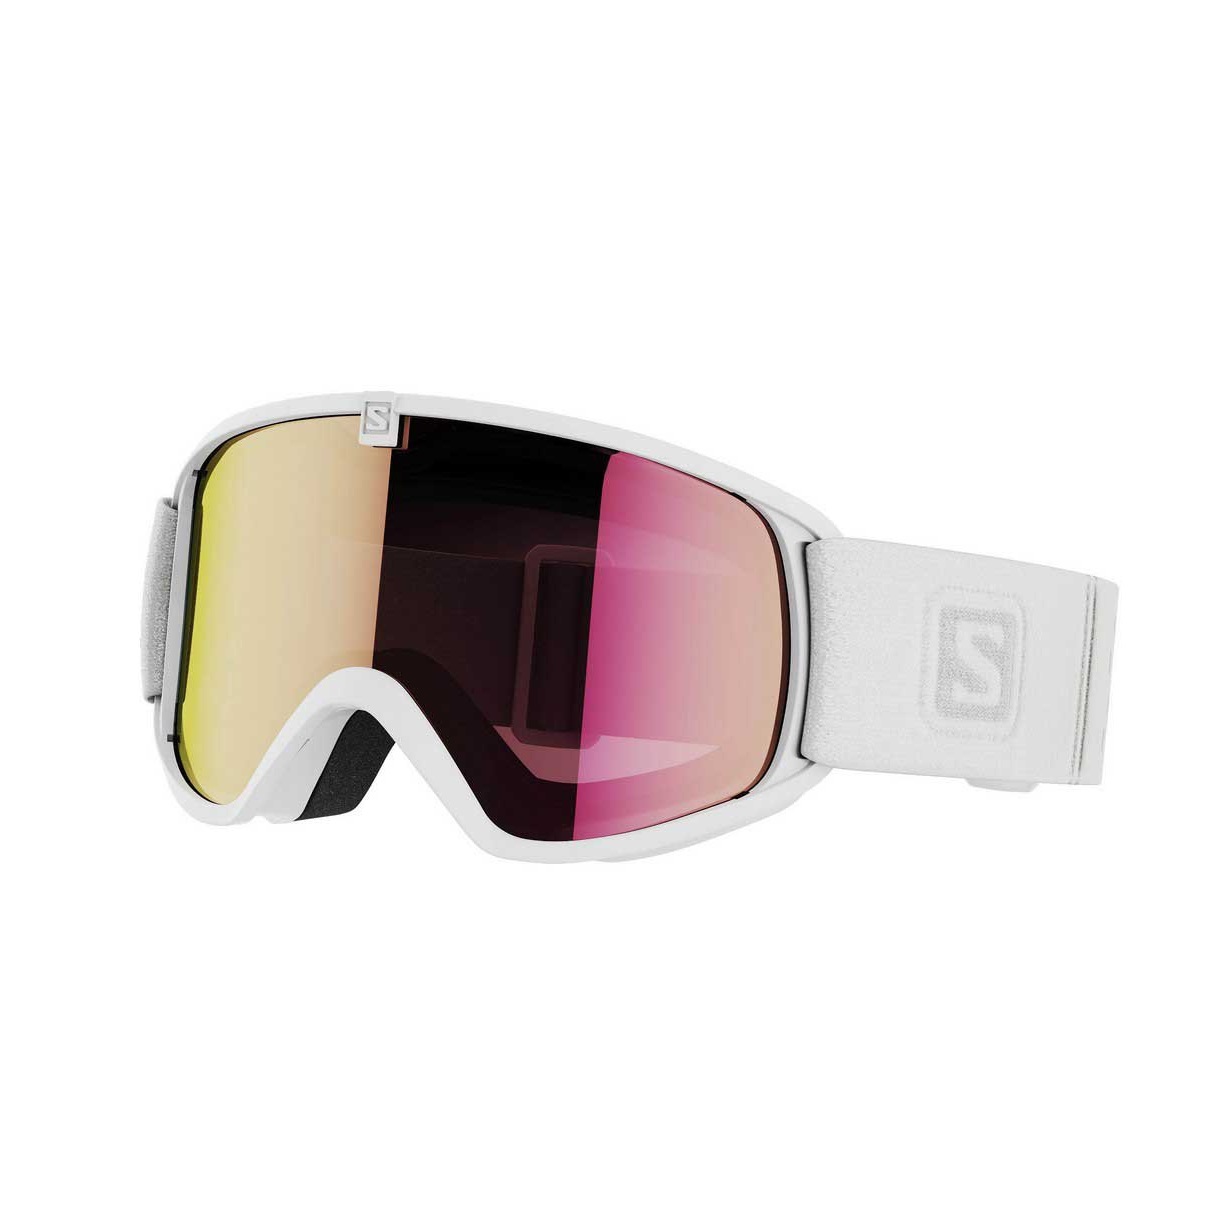 Gafas de esquí fotocromáticas - Salomon Force Rojo - L47420400, Ferrer  Sport